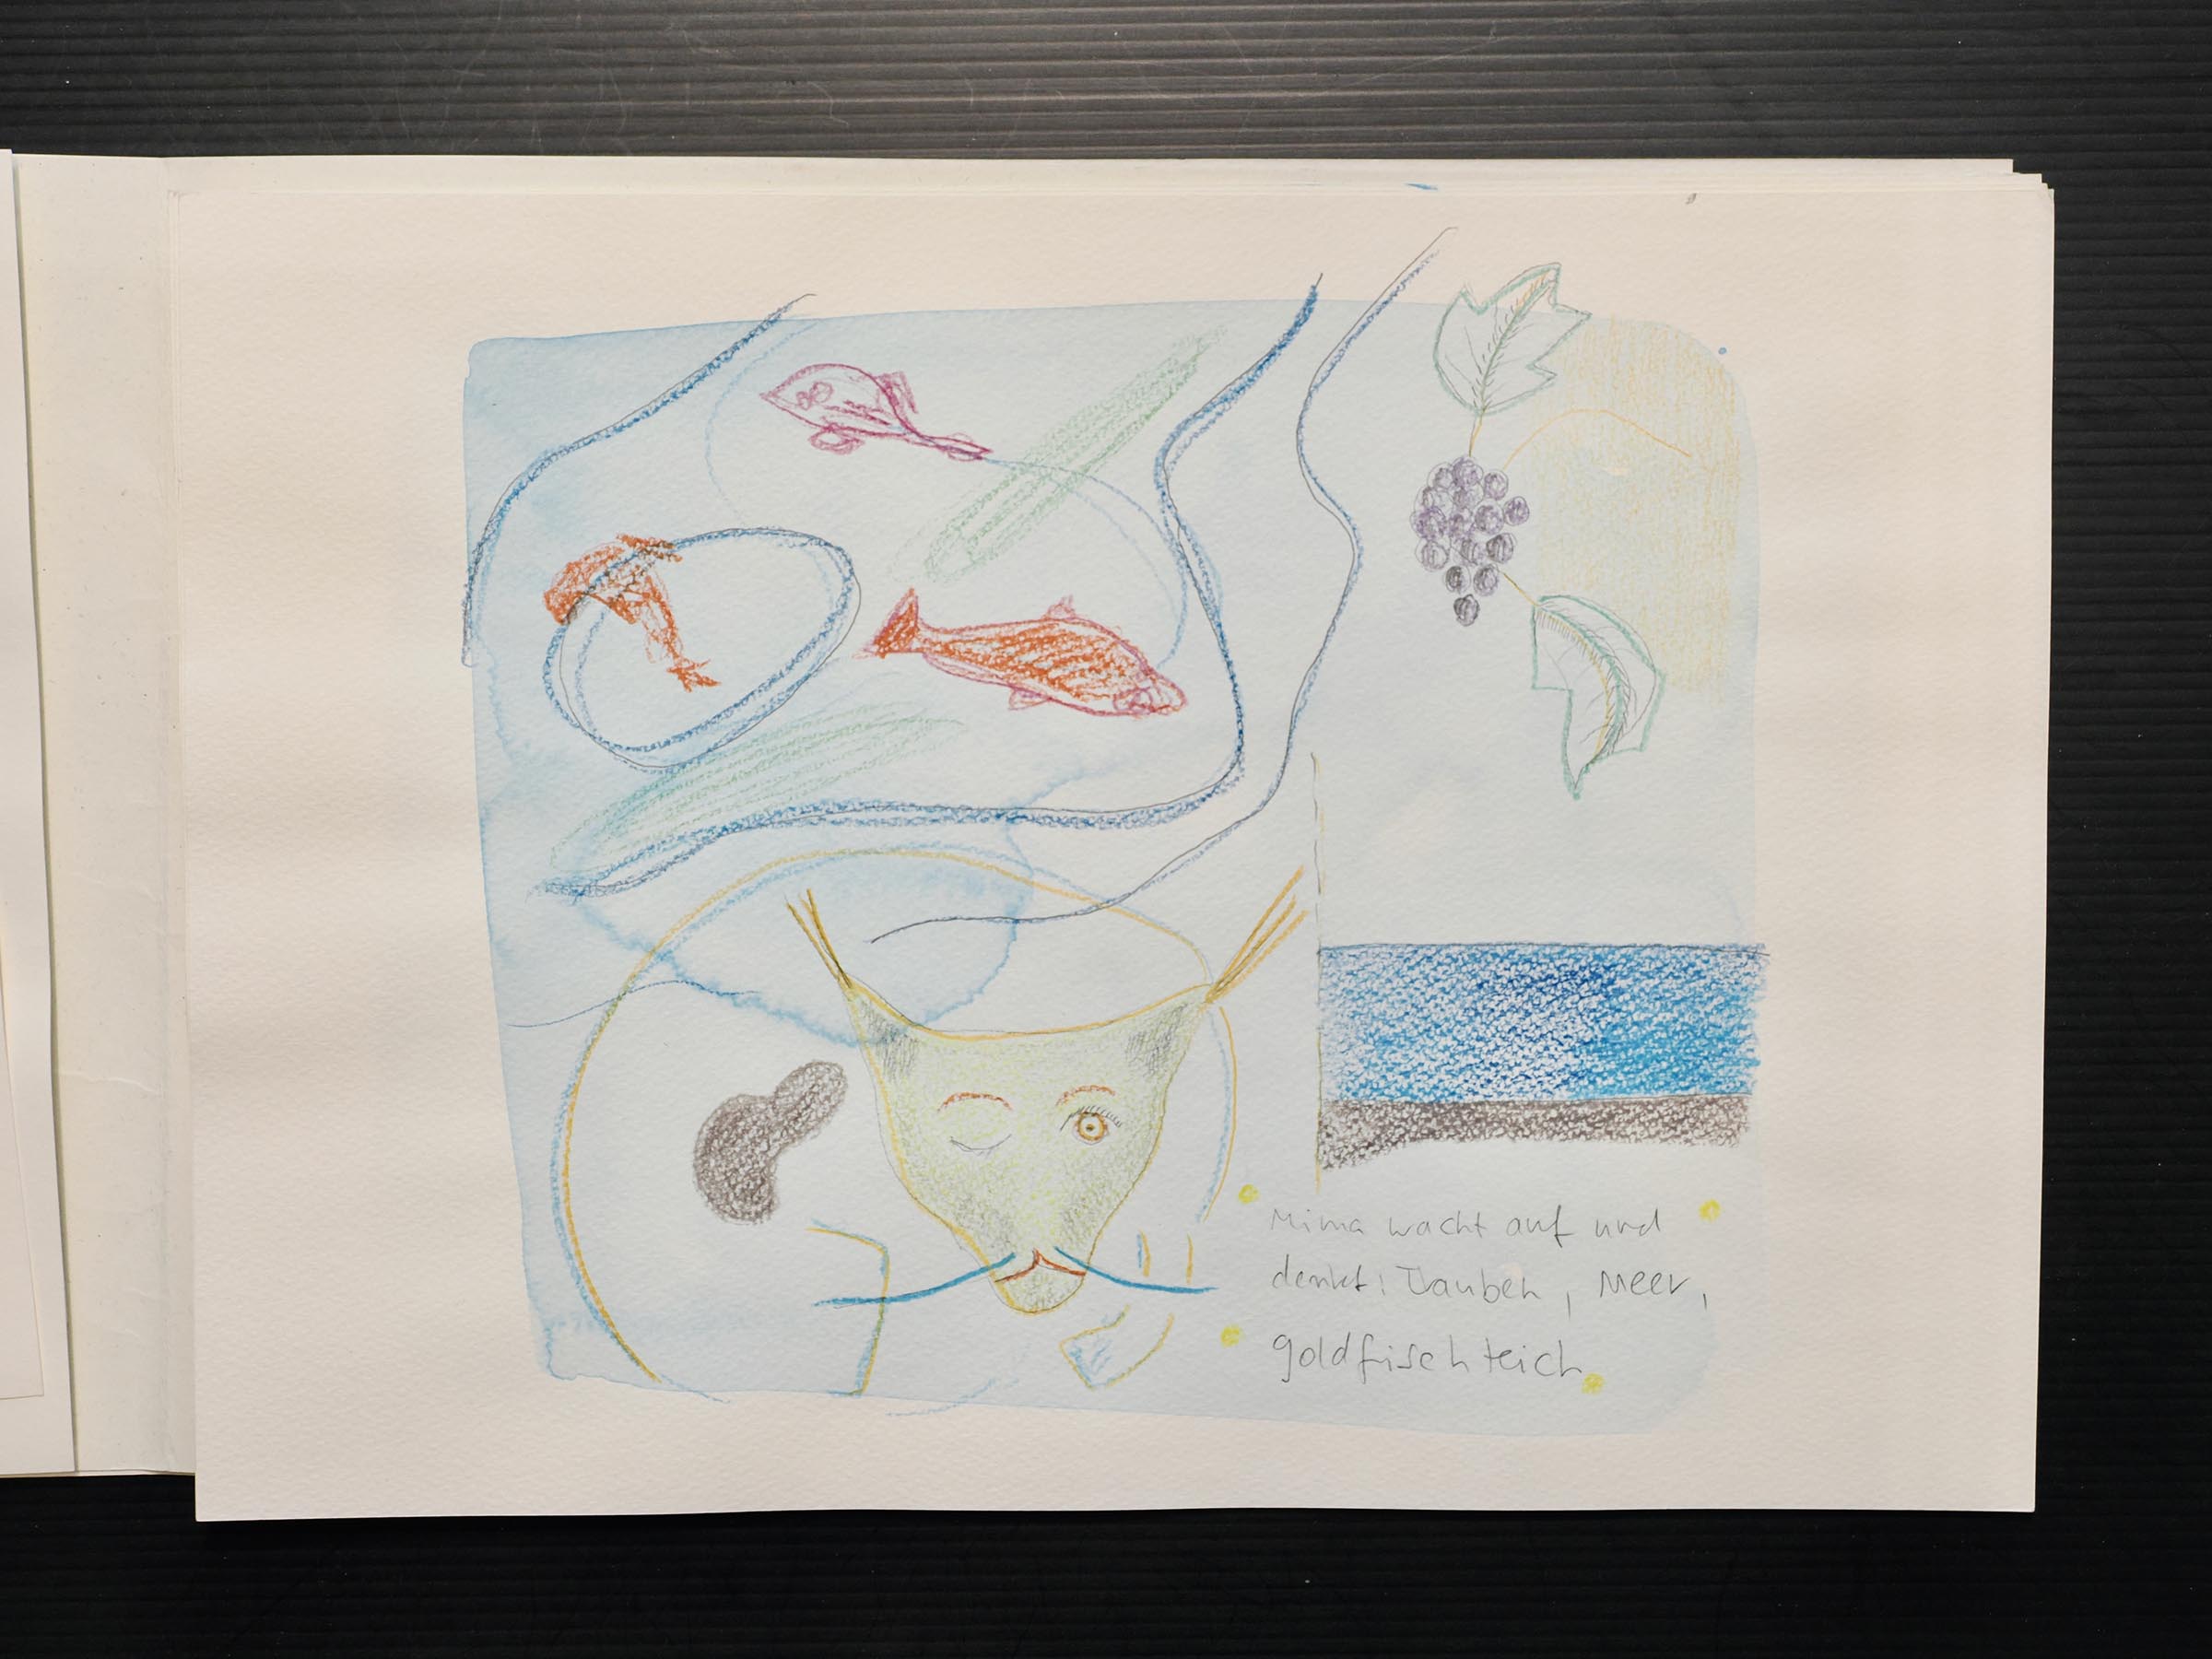 Aquarell, Bleistift, Farbstift auf Papier. Tafel 5.